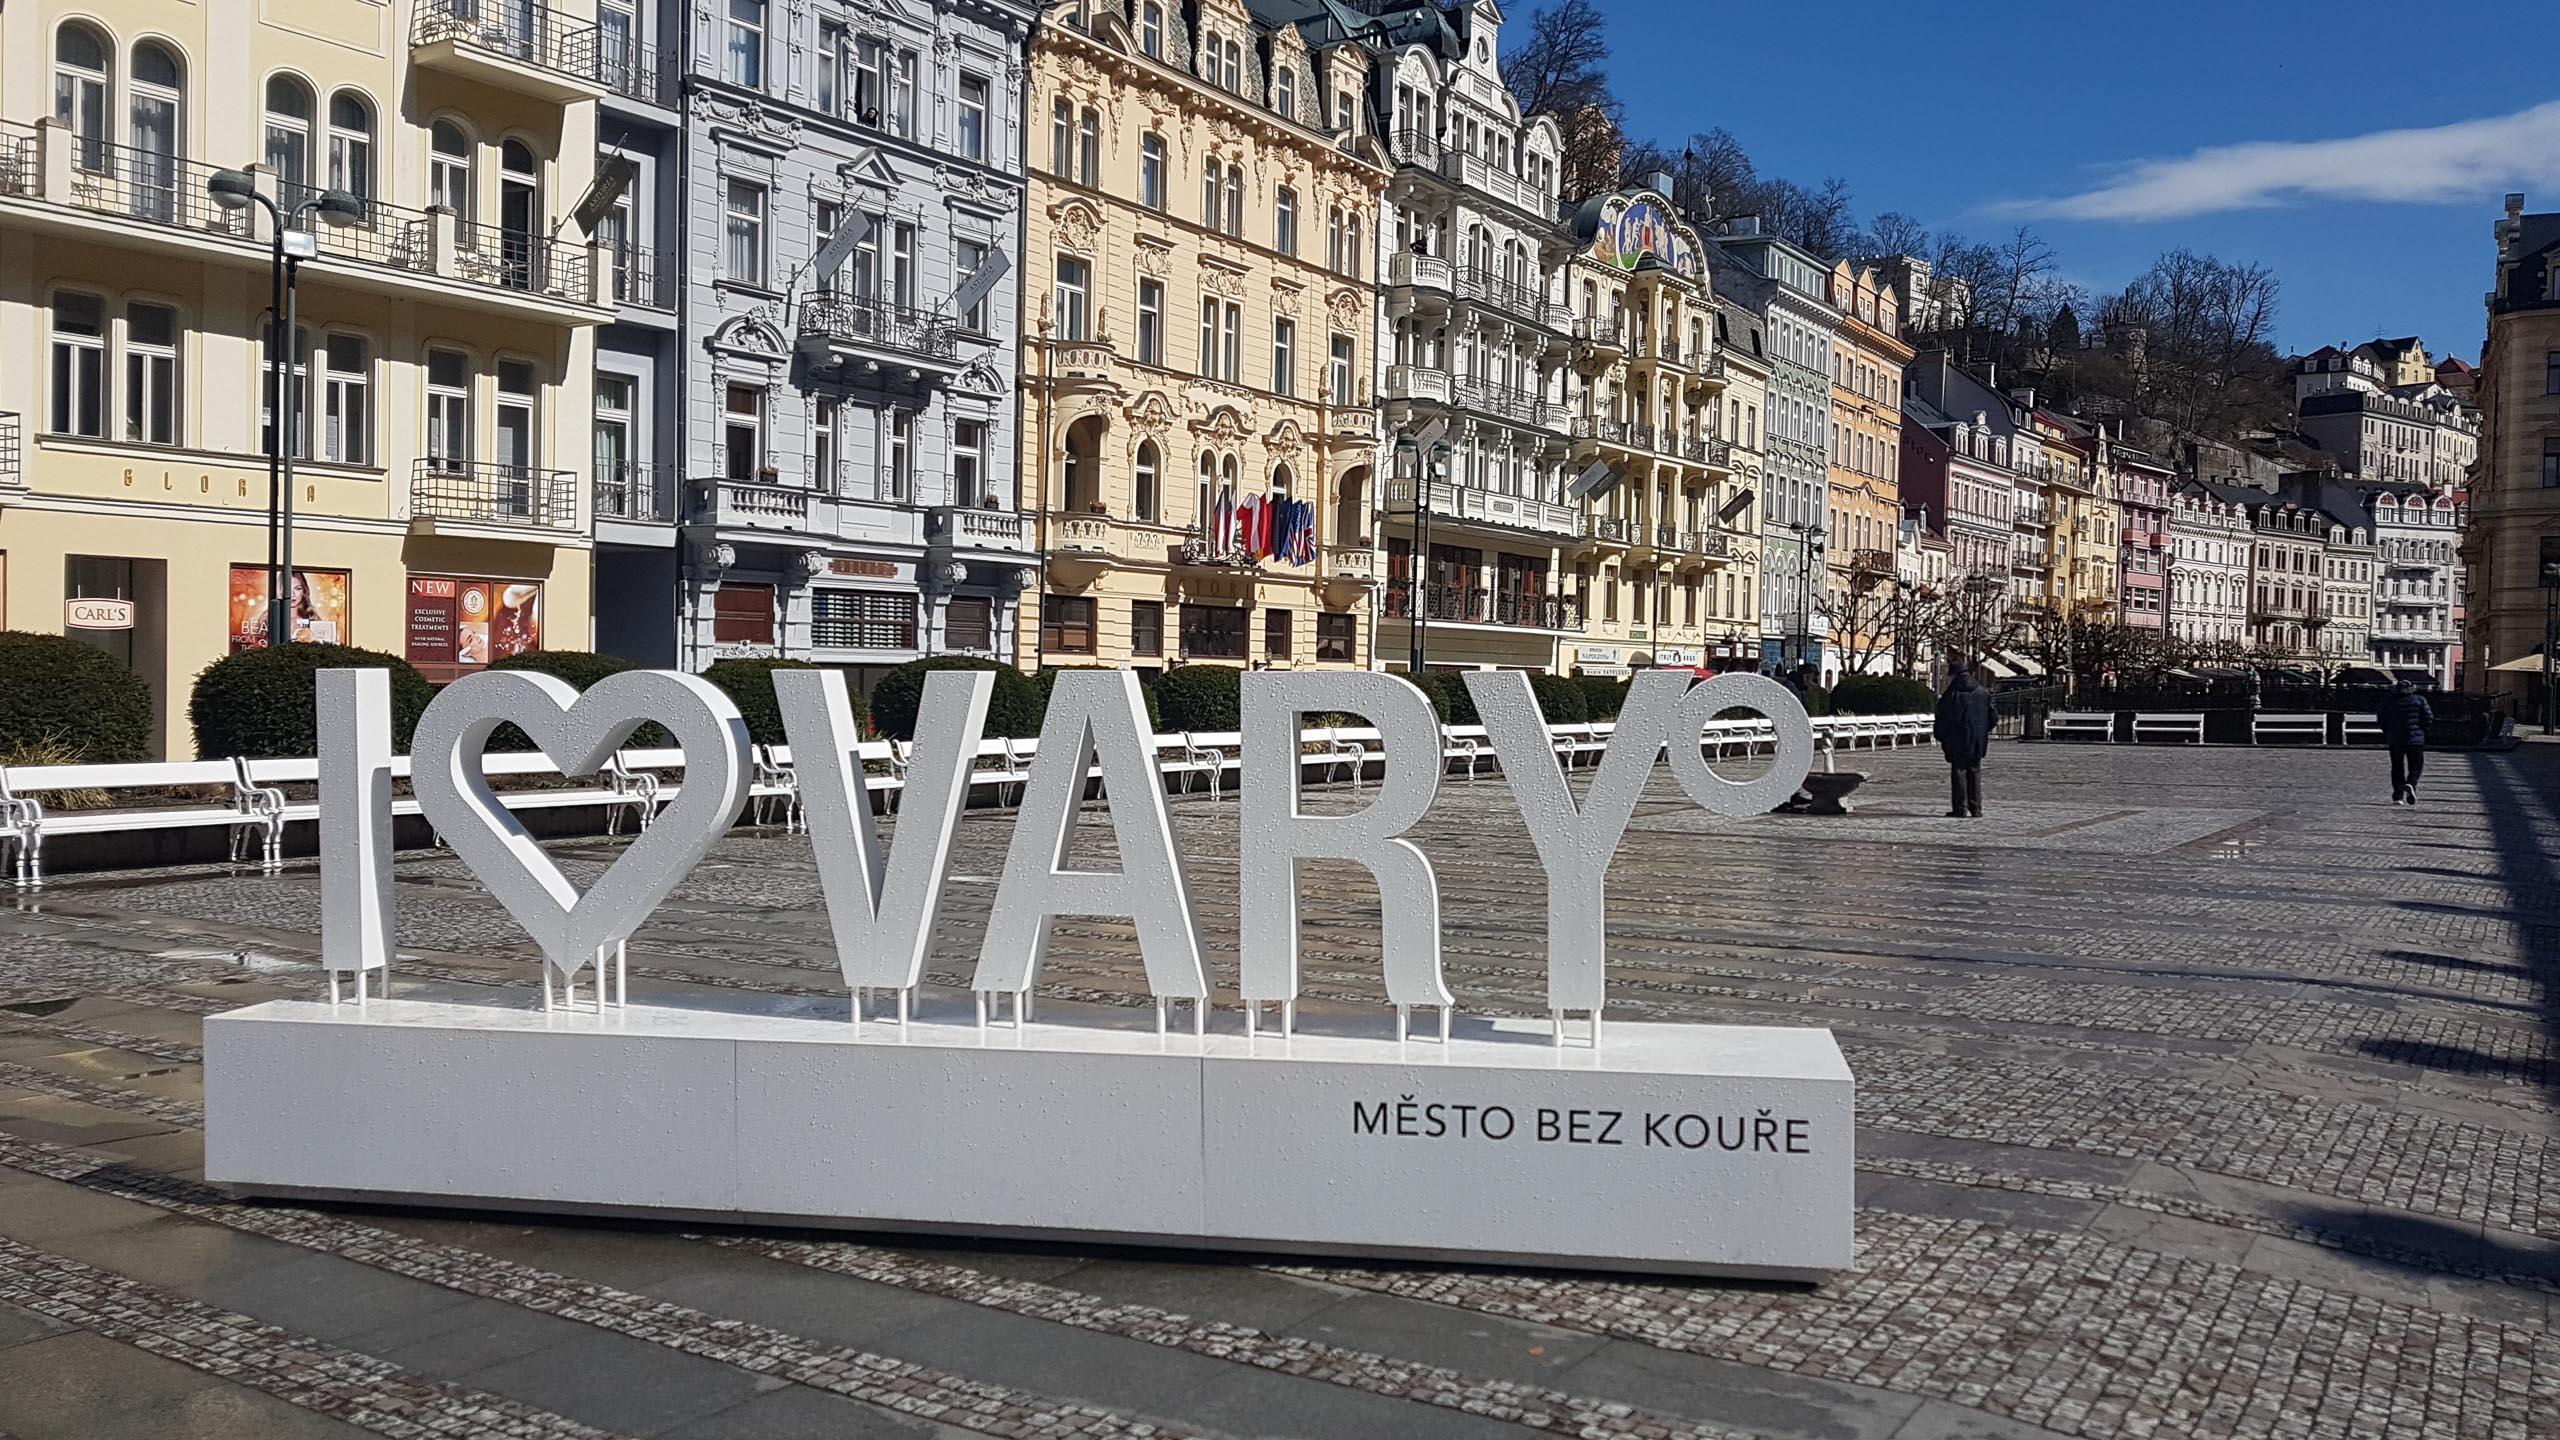 Karlsbad - Karlovy Vary